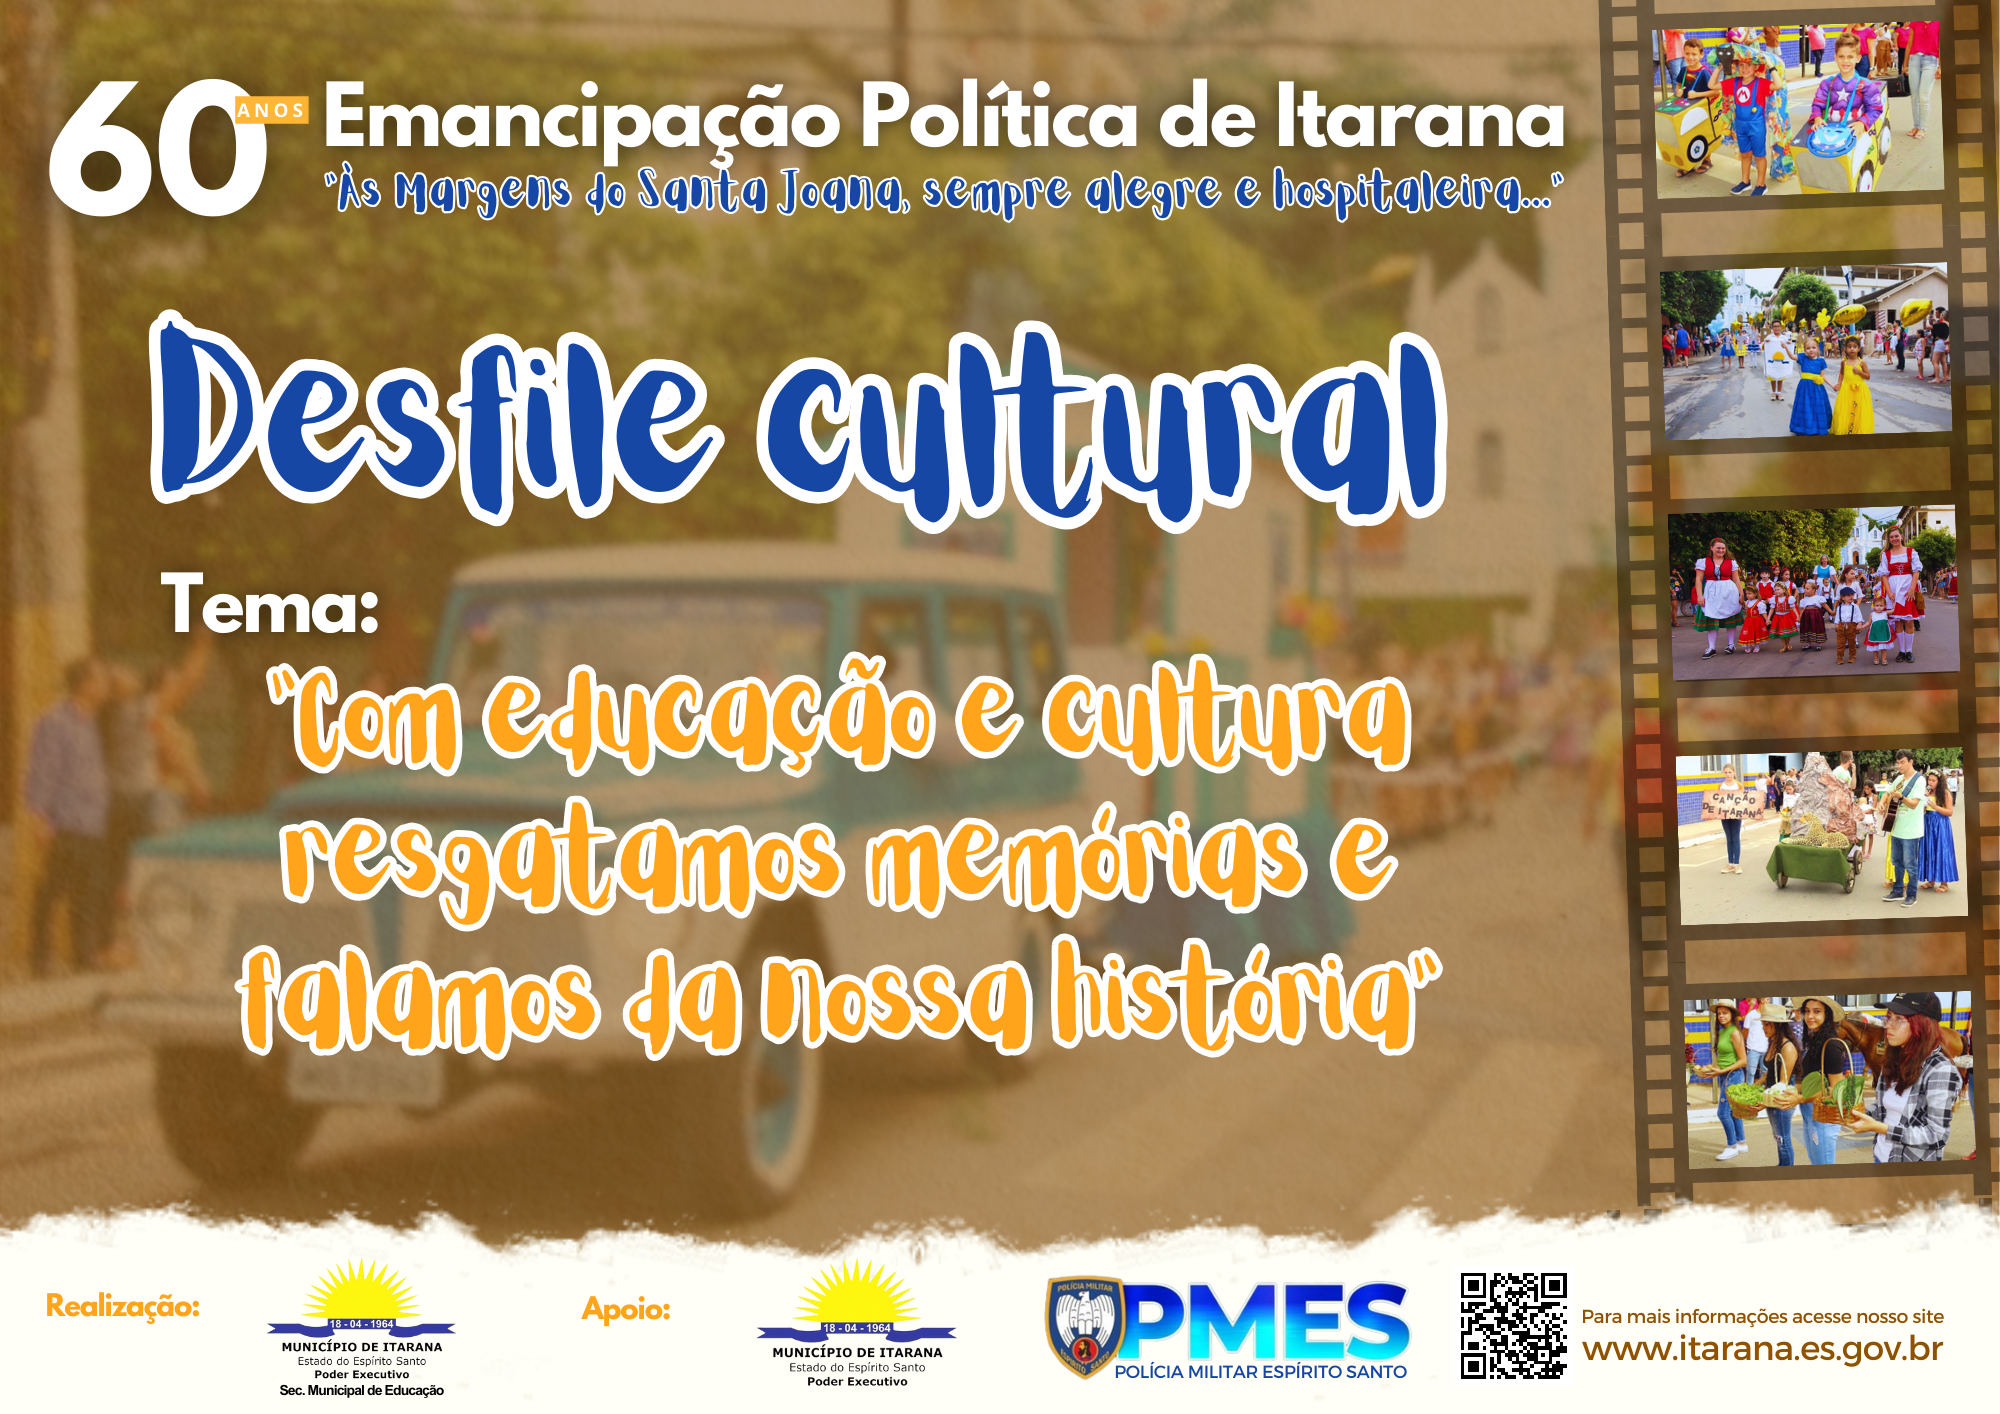 Desfile Histórico Cultural vai celebrar 60 anos de Emancipação Política de Itarana